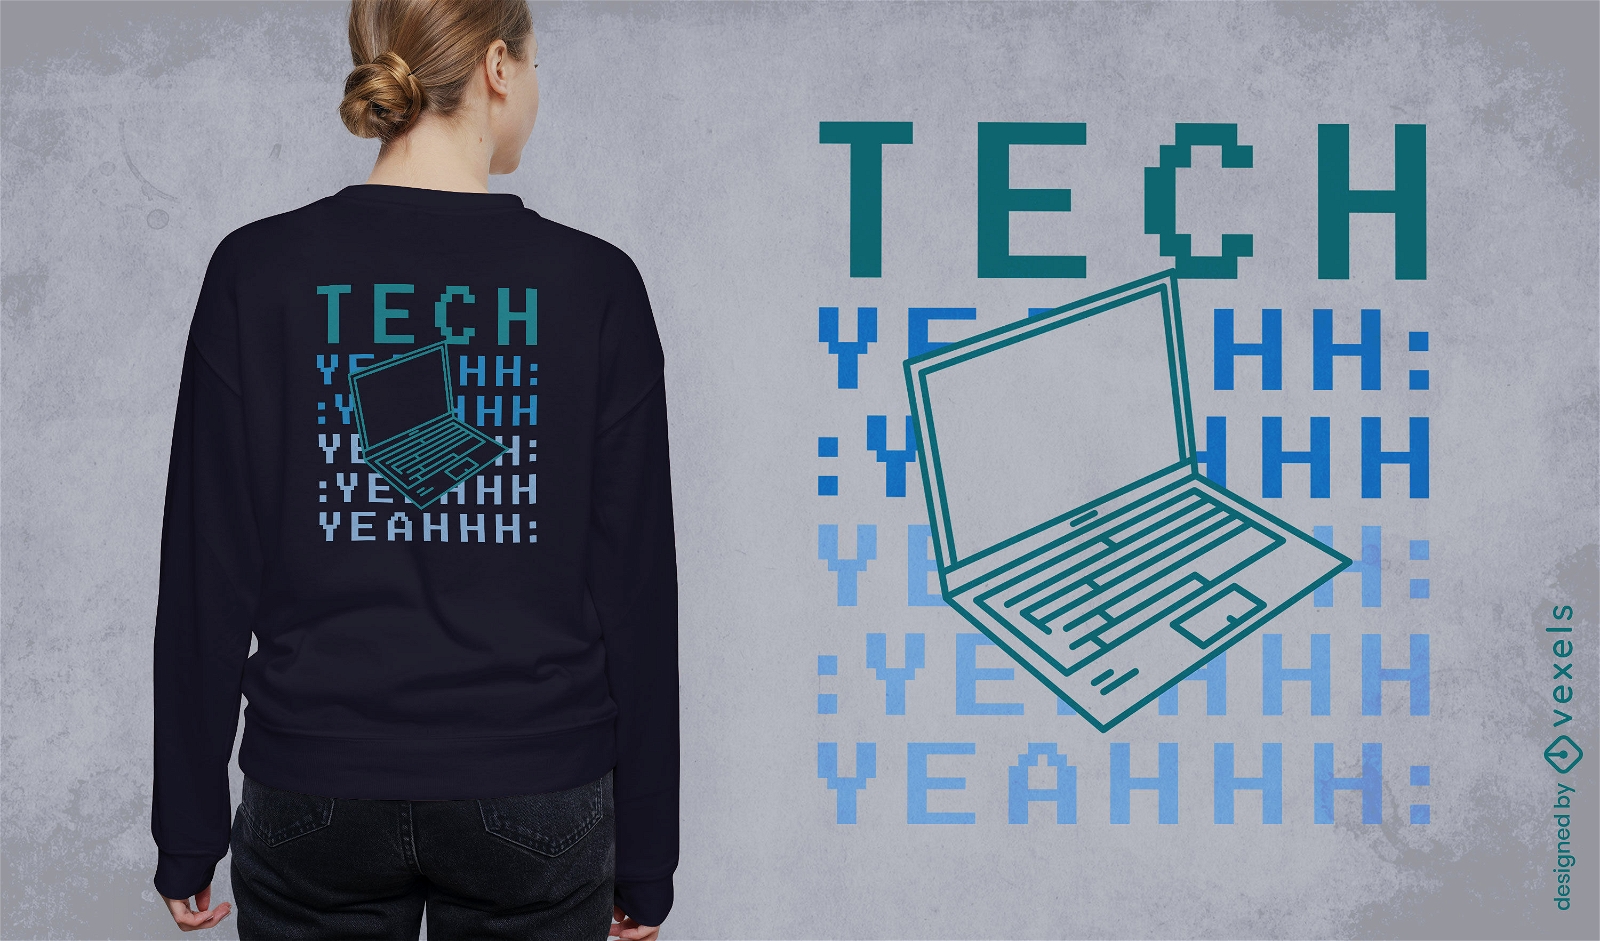 Tech computer t-shirt design